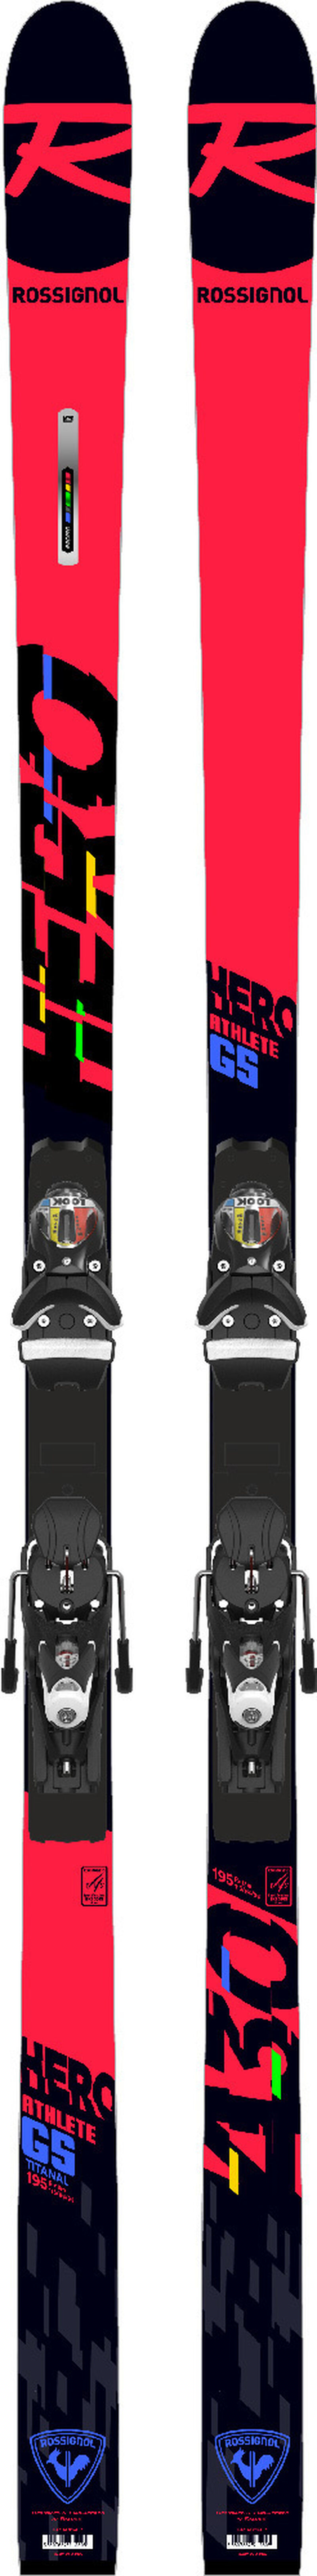 Unisex Racing Skis Hero Athlete Gs (R22)